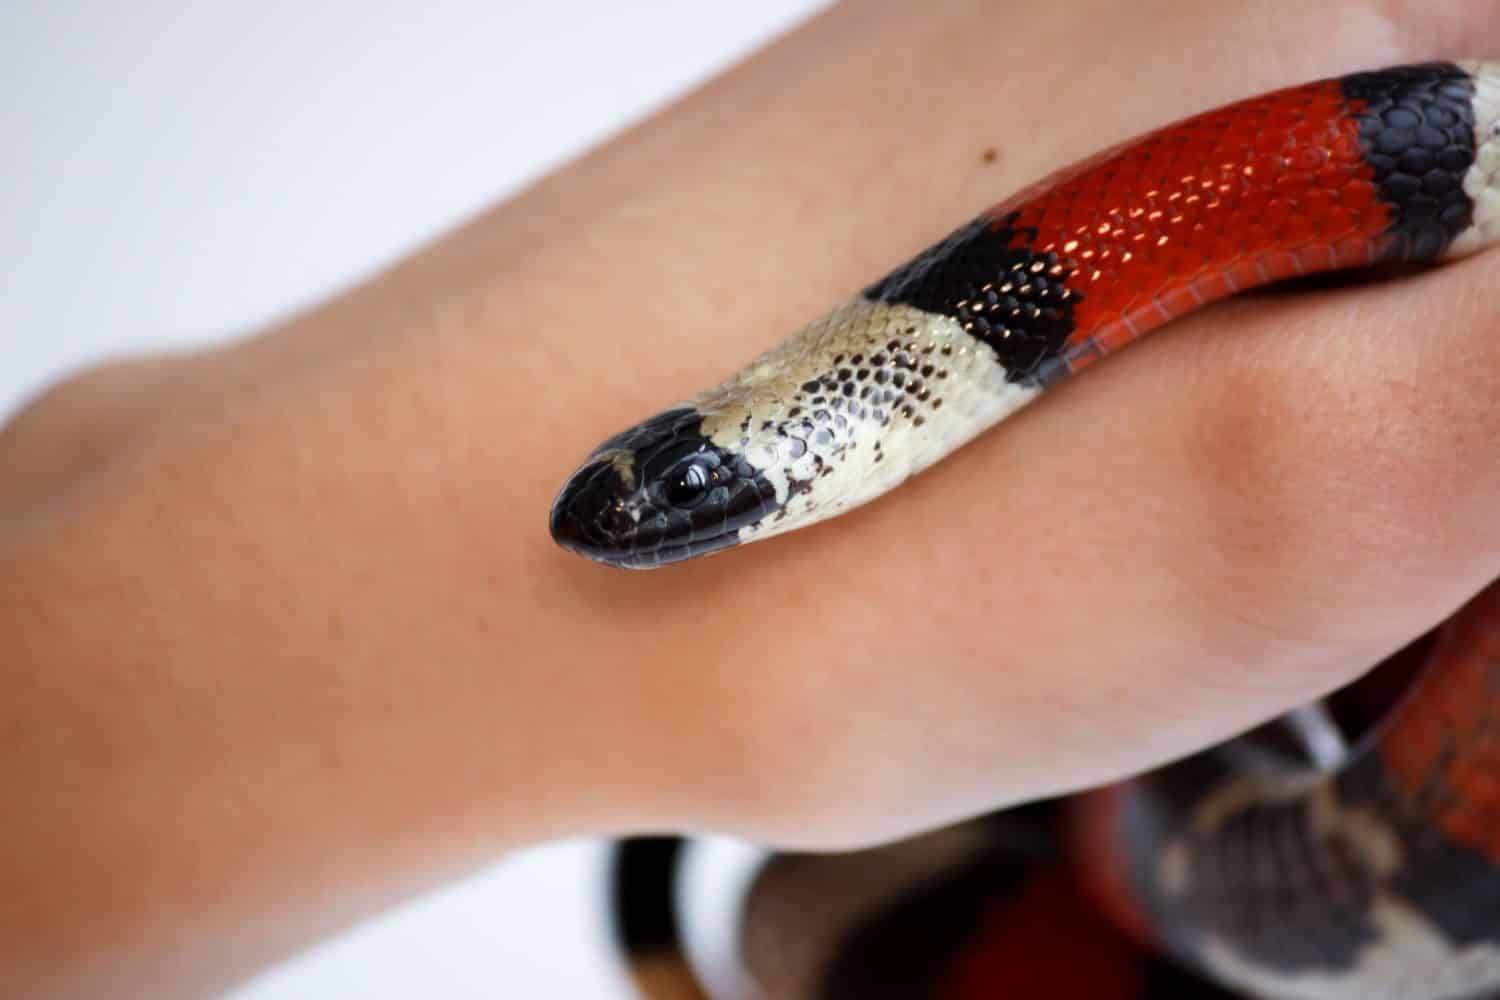 mano di una ragazza e del serpente reale Young Scarlet Lampropeltis elapsoides.  Serpente non velenoso con tricolore, che caratterizza il mimetismo.  su uno sfondo bianco